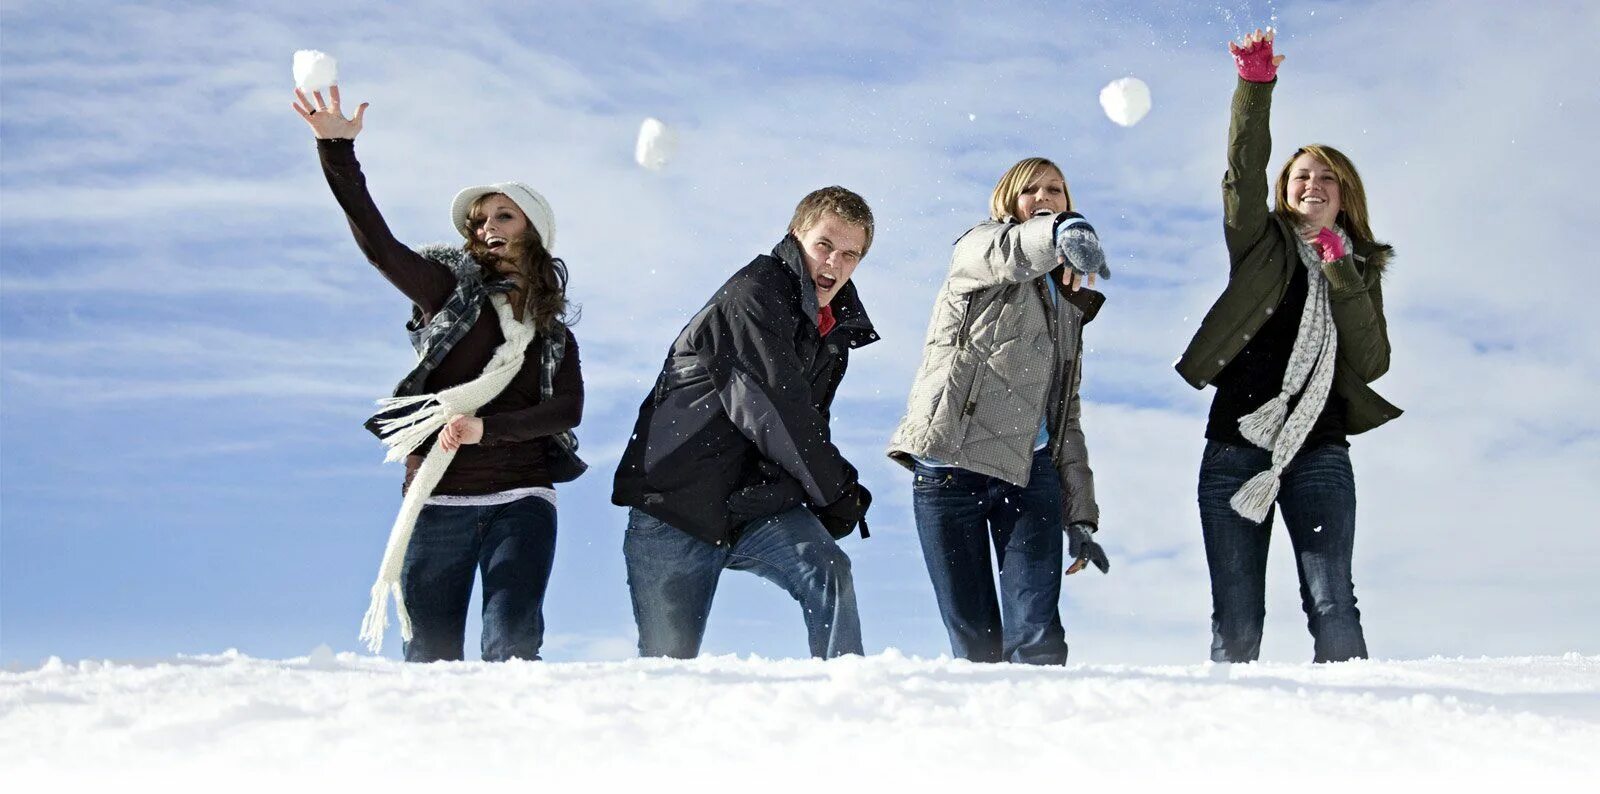 Кидались снежками. Игра в снежки. Люди зимы. Прогулка с друзьями зимой. Подростки зимой.